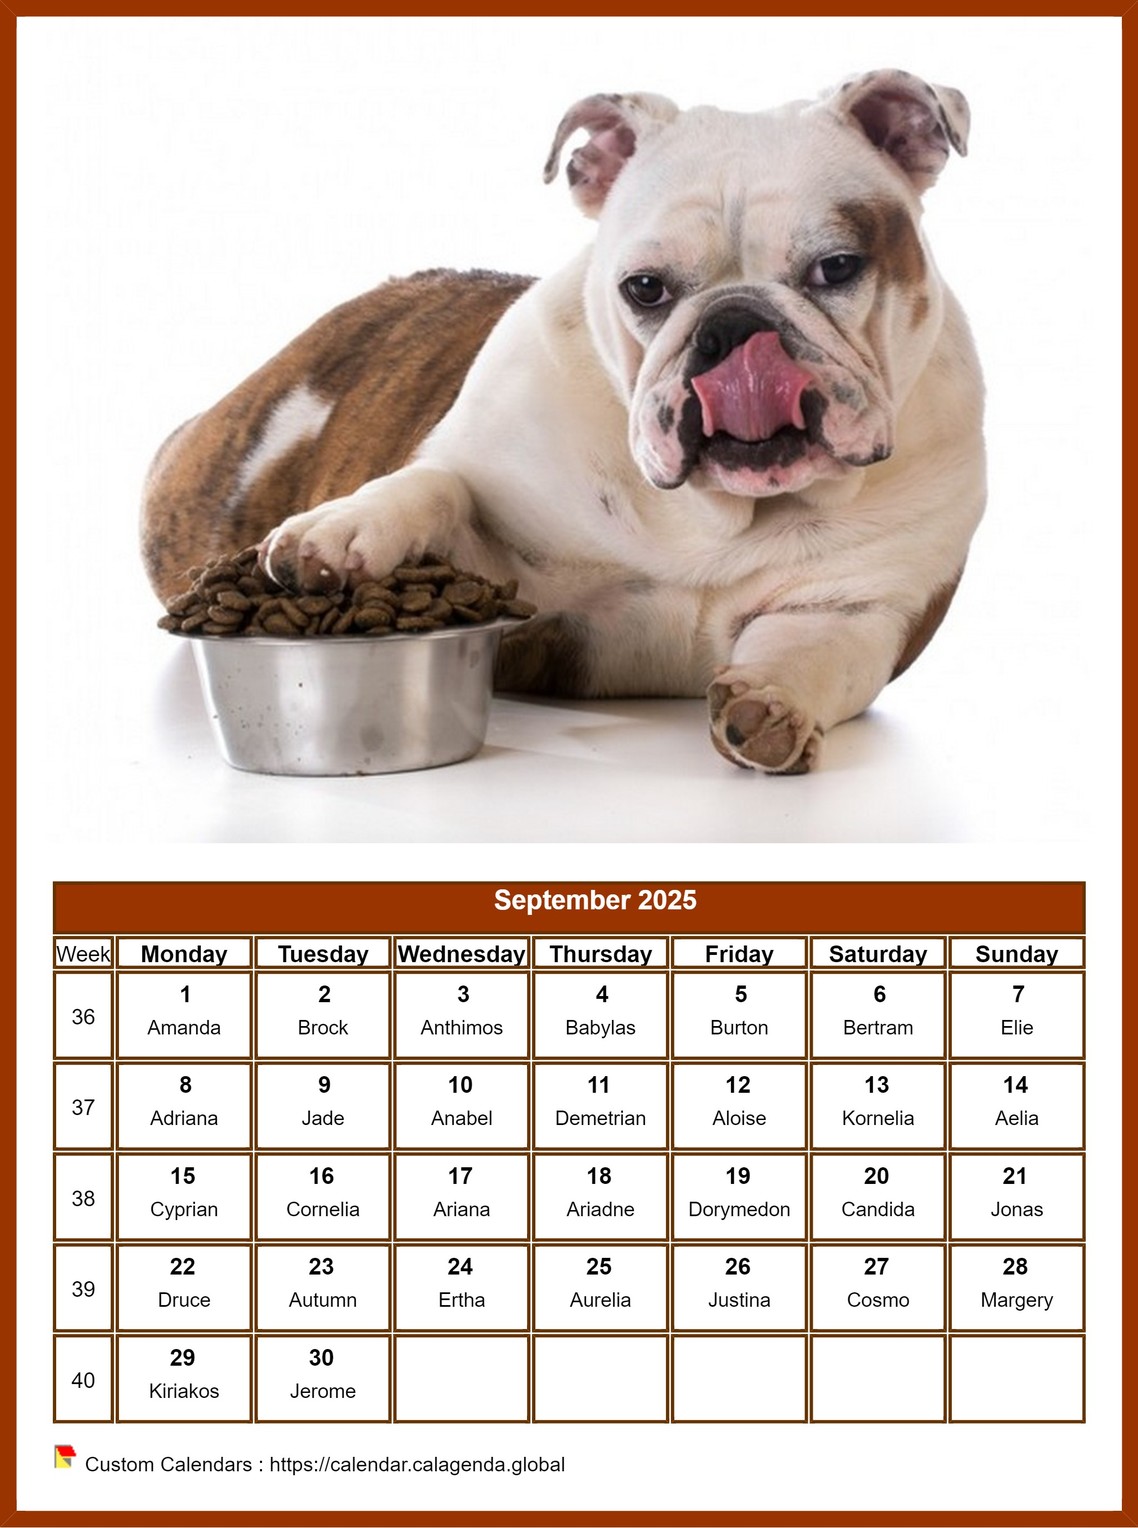 Calendar September 2025 dogs